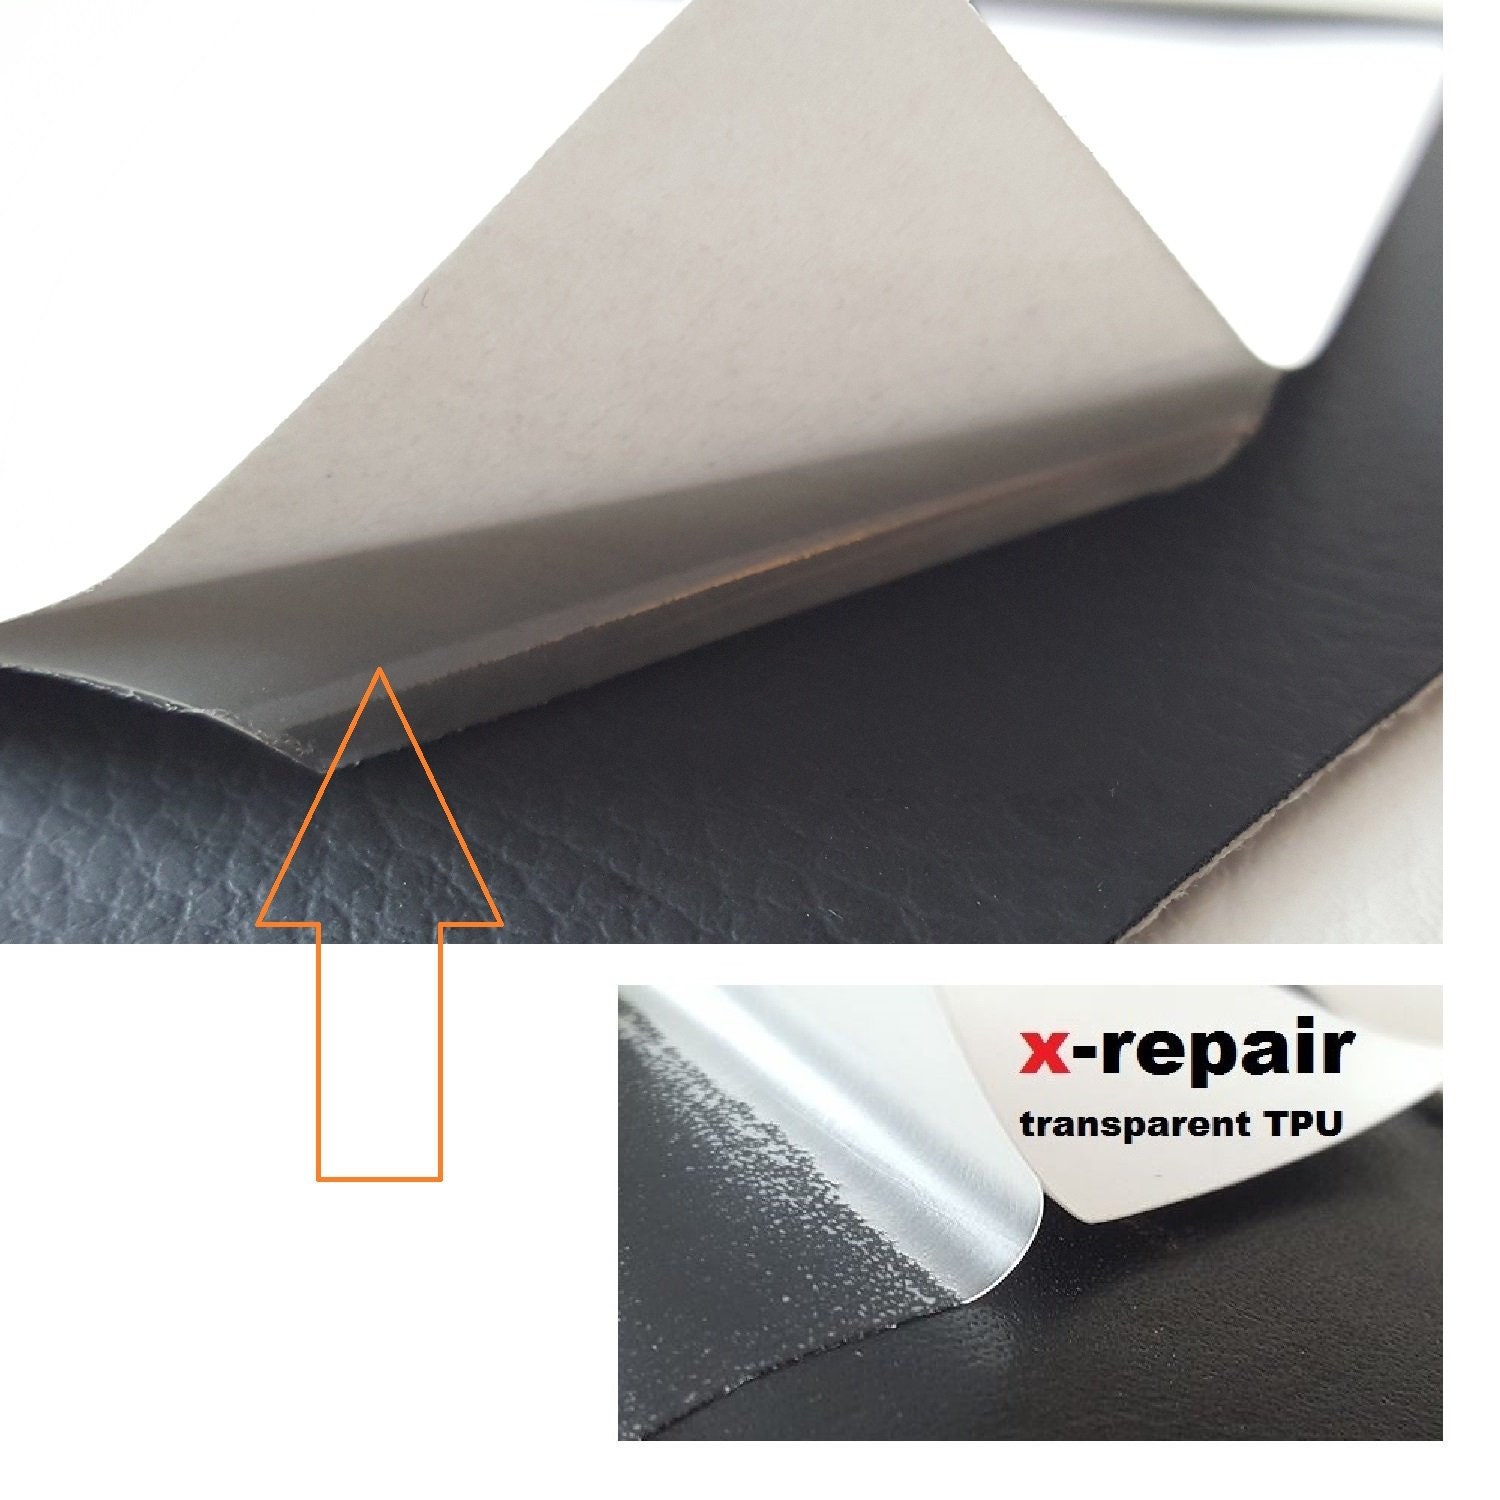 2pcs Self-adhesive Shoe Patch, Tent, Raincoat, Down Jacket Repair